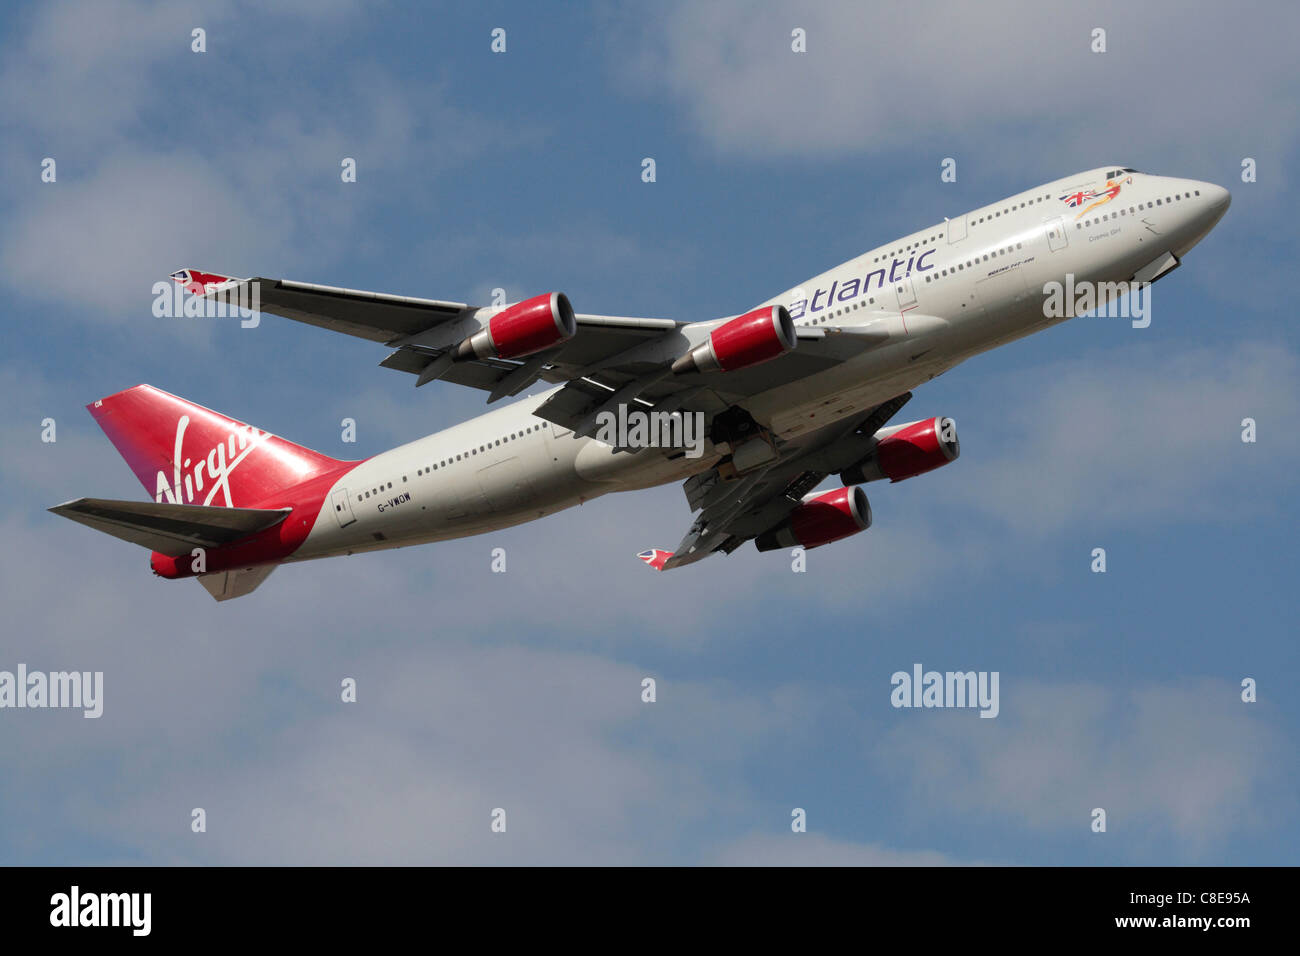 Virgin Atlantic Airways Boeing 747-400 jumbo jet au décollage Banque D'Images